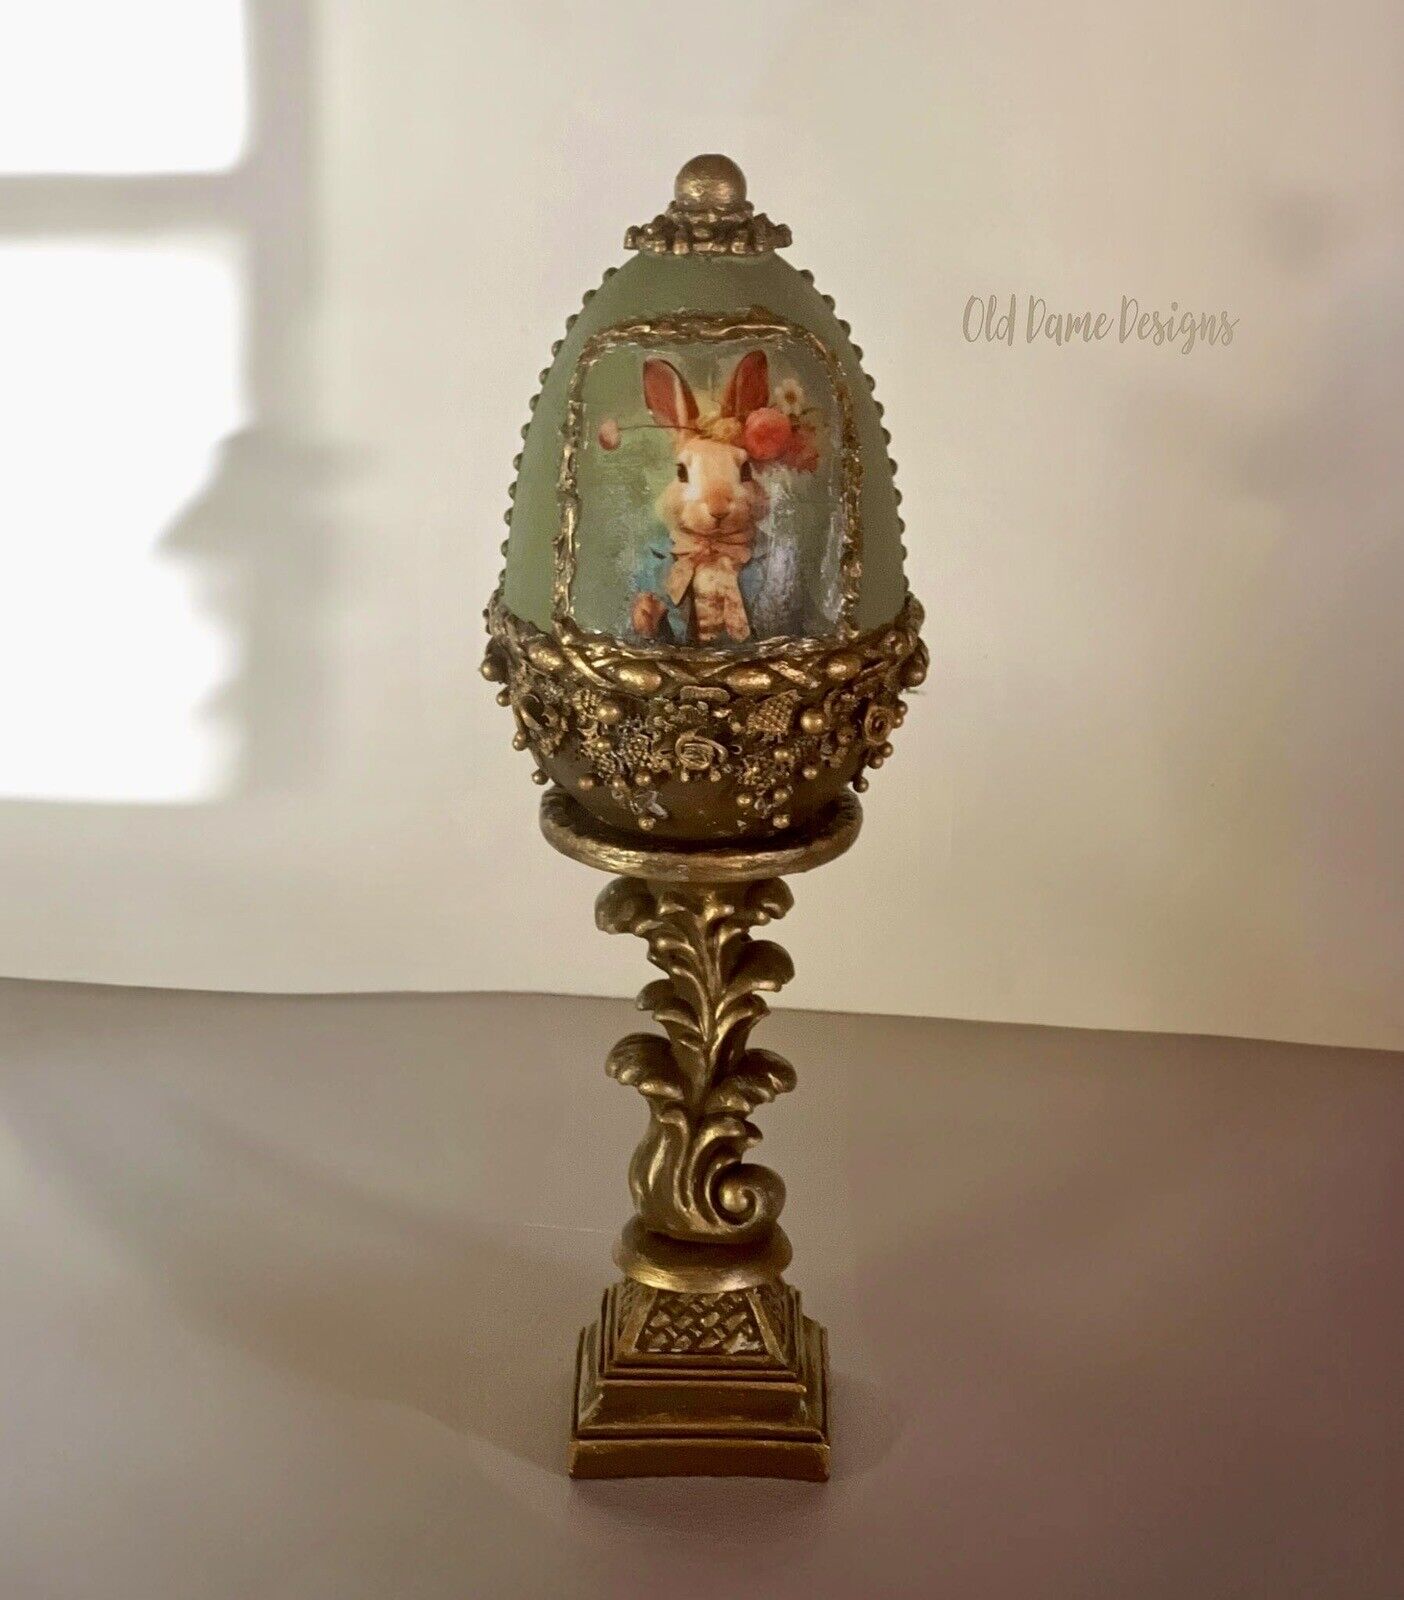 XL Decorative Ornate Egg on Stand * Home Decor * Original